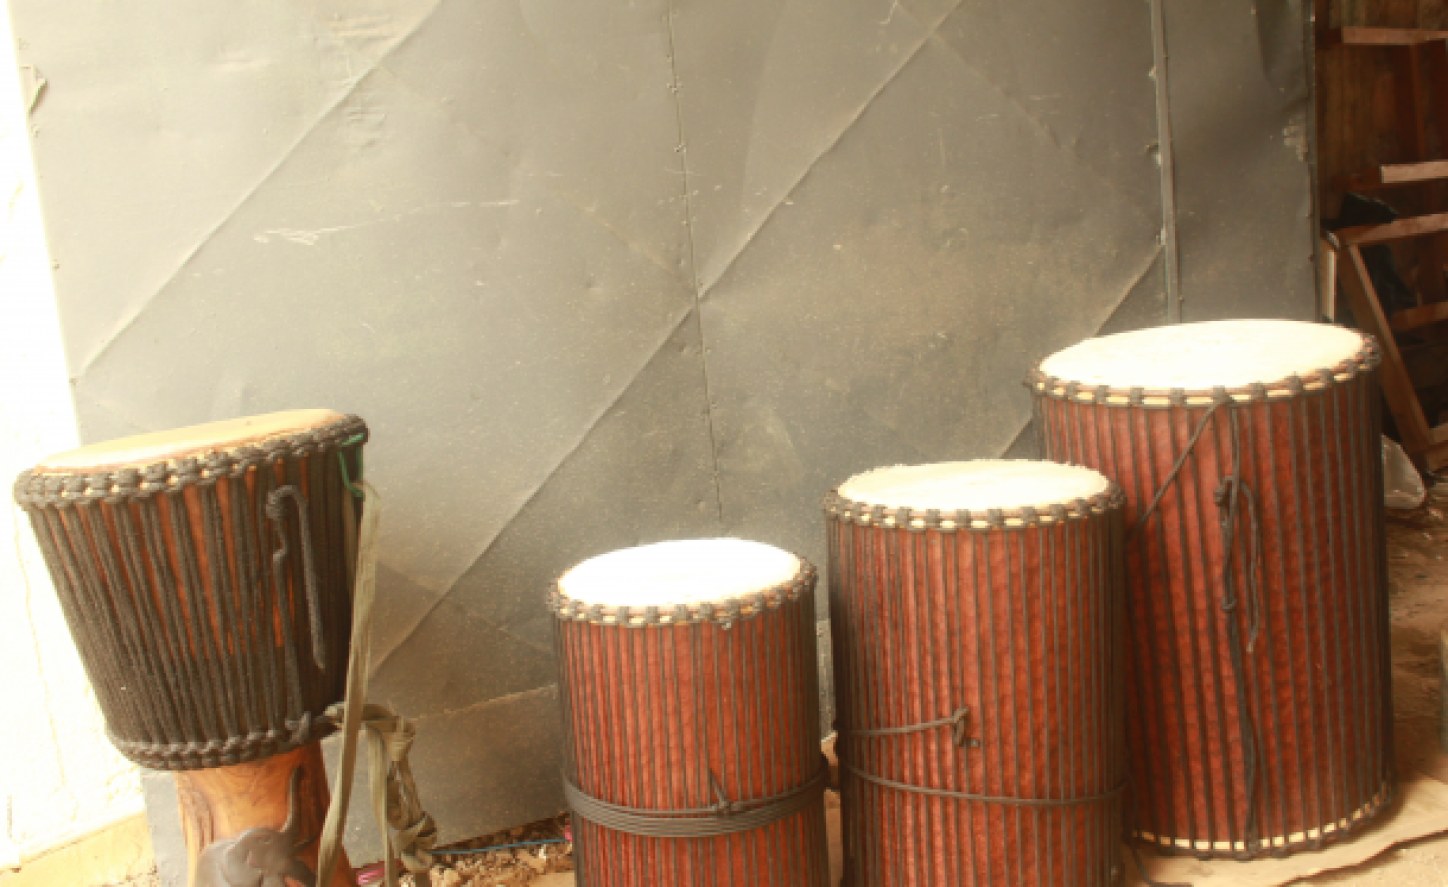 Nigeria: Prisoners in Ogun Form Musical Band - allAfrica.com